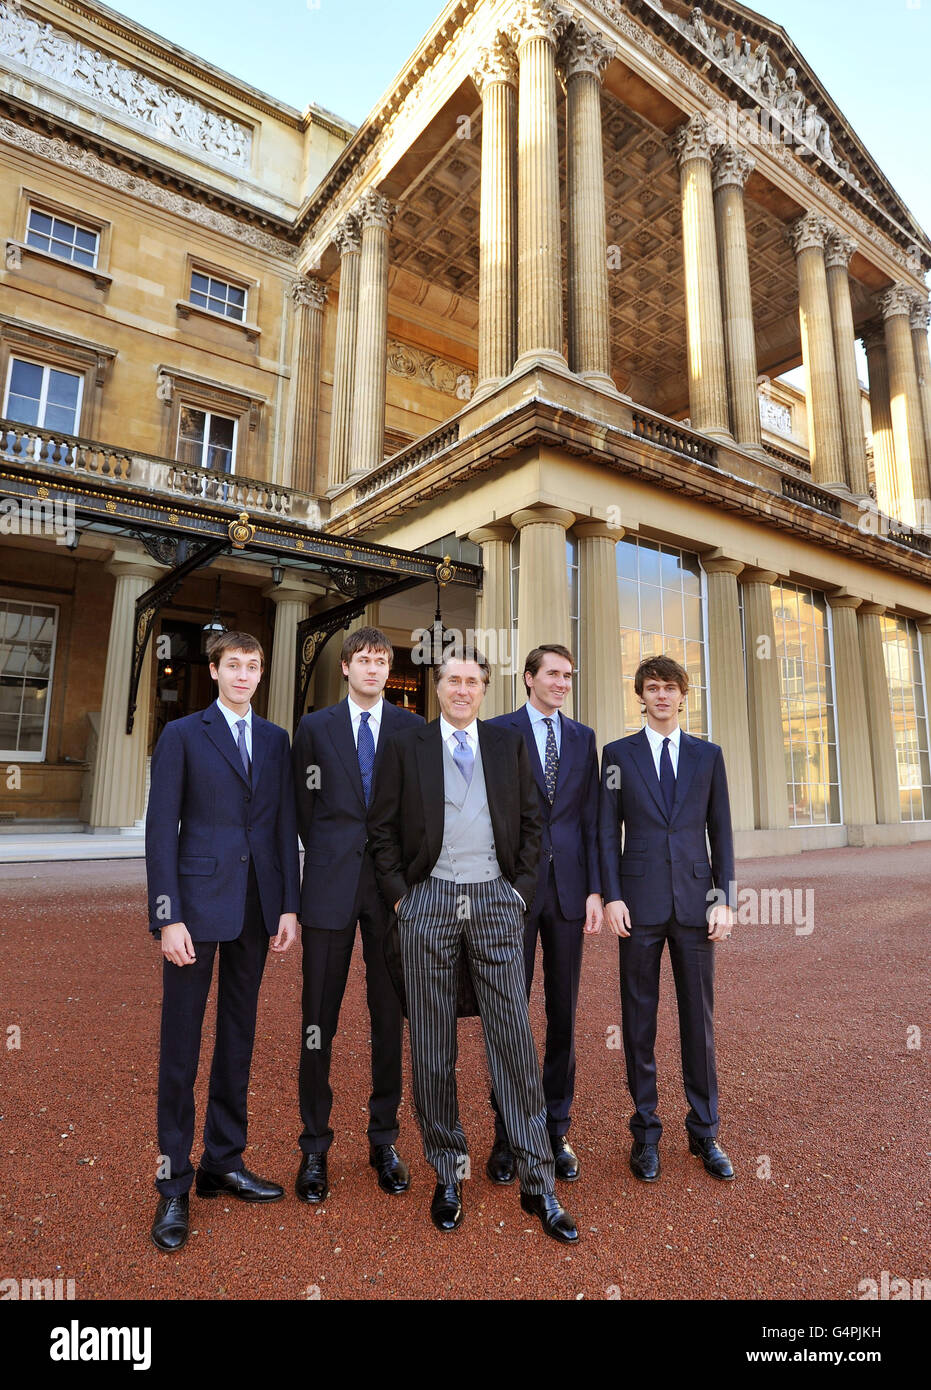 Roxy Music Sänger Bryan Ferry, mit seinen vier Söhnen (von links nach rechts) Merlin, Isaac, Otis und Tara, als sie zur Investiturzeremonie im Buckingham Palace im Zentrum von London ankommen, wo er seine Commander of the British Empire (CBE) Medaille von der Queen erhalten wird. Stockfoto